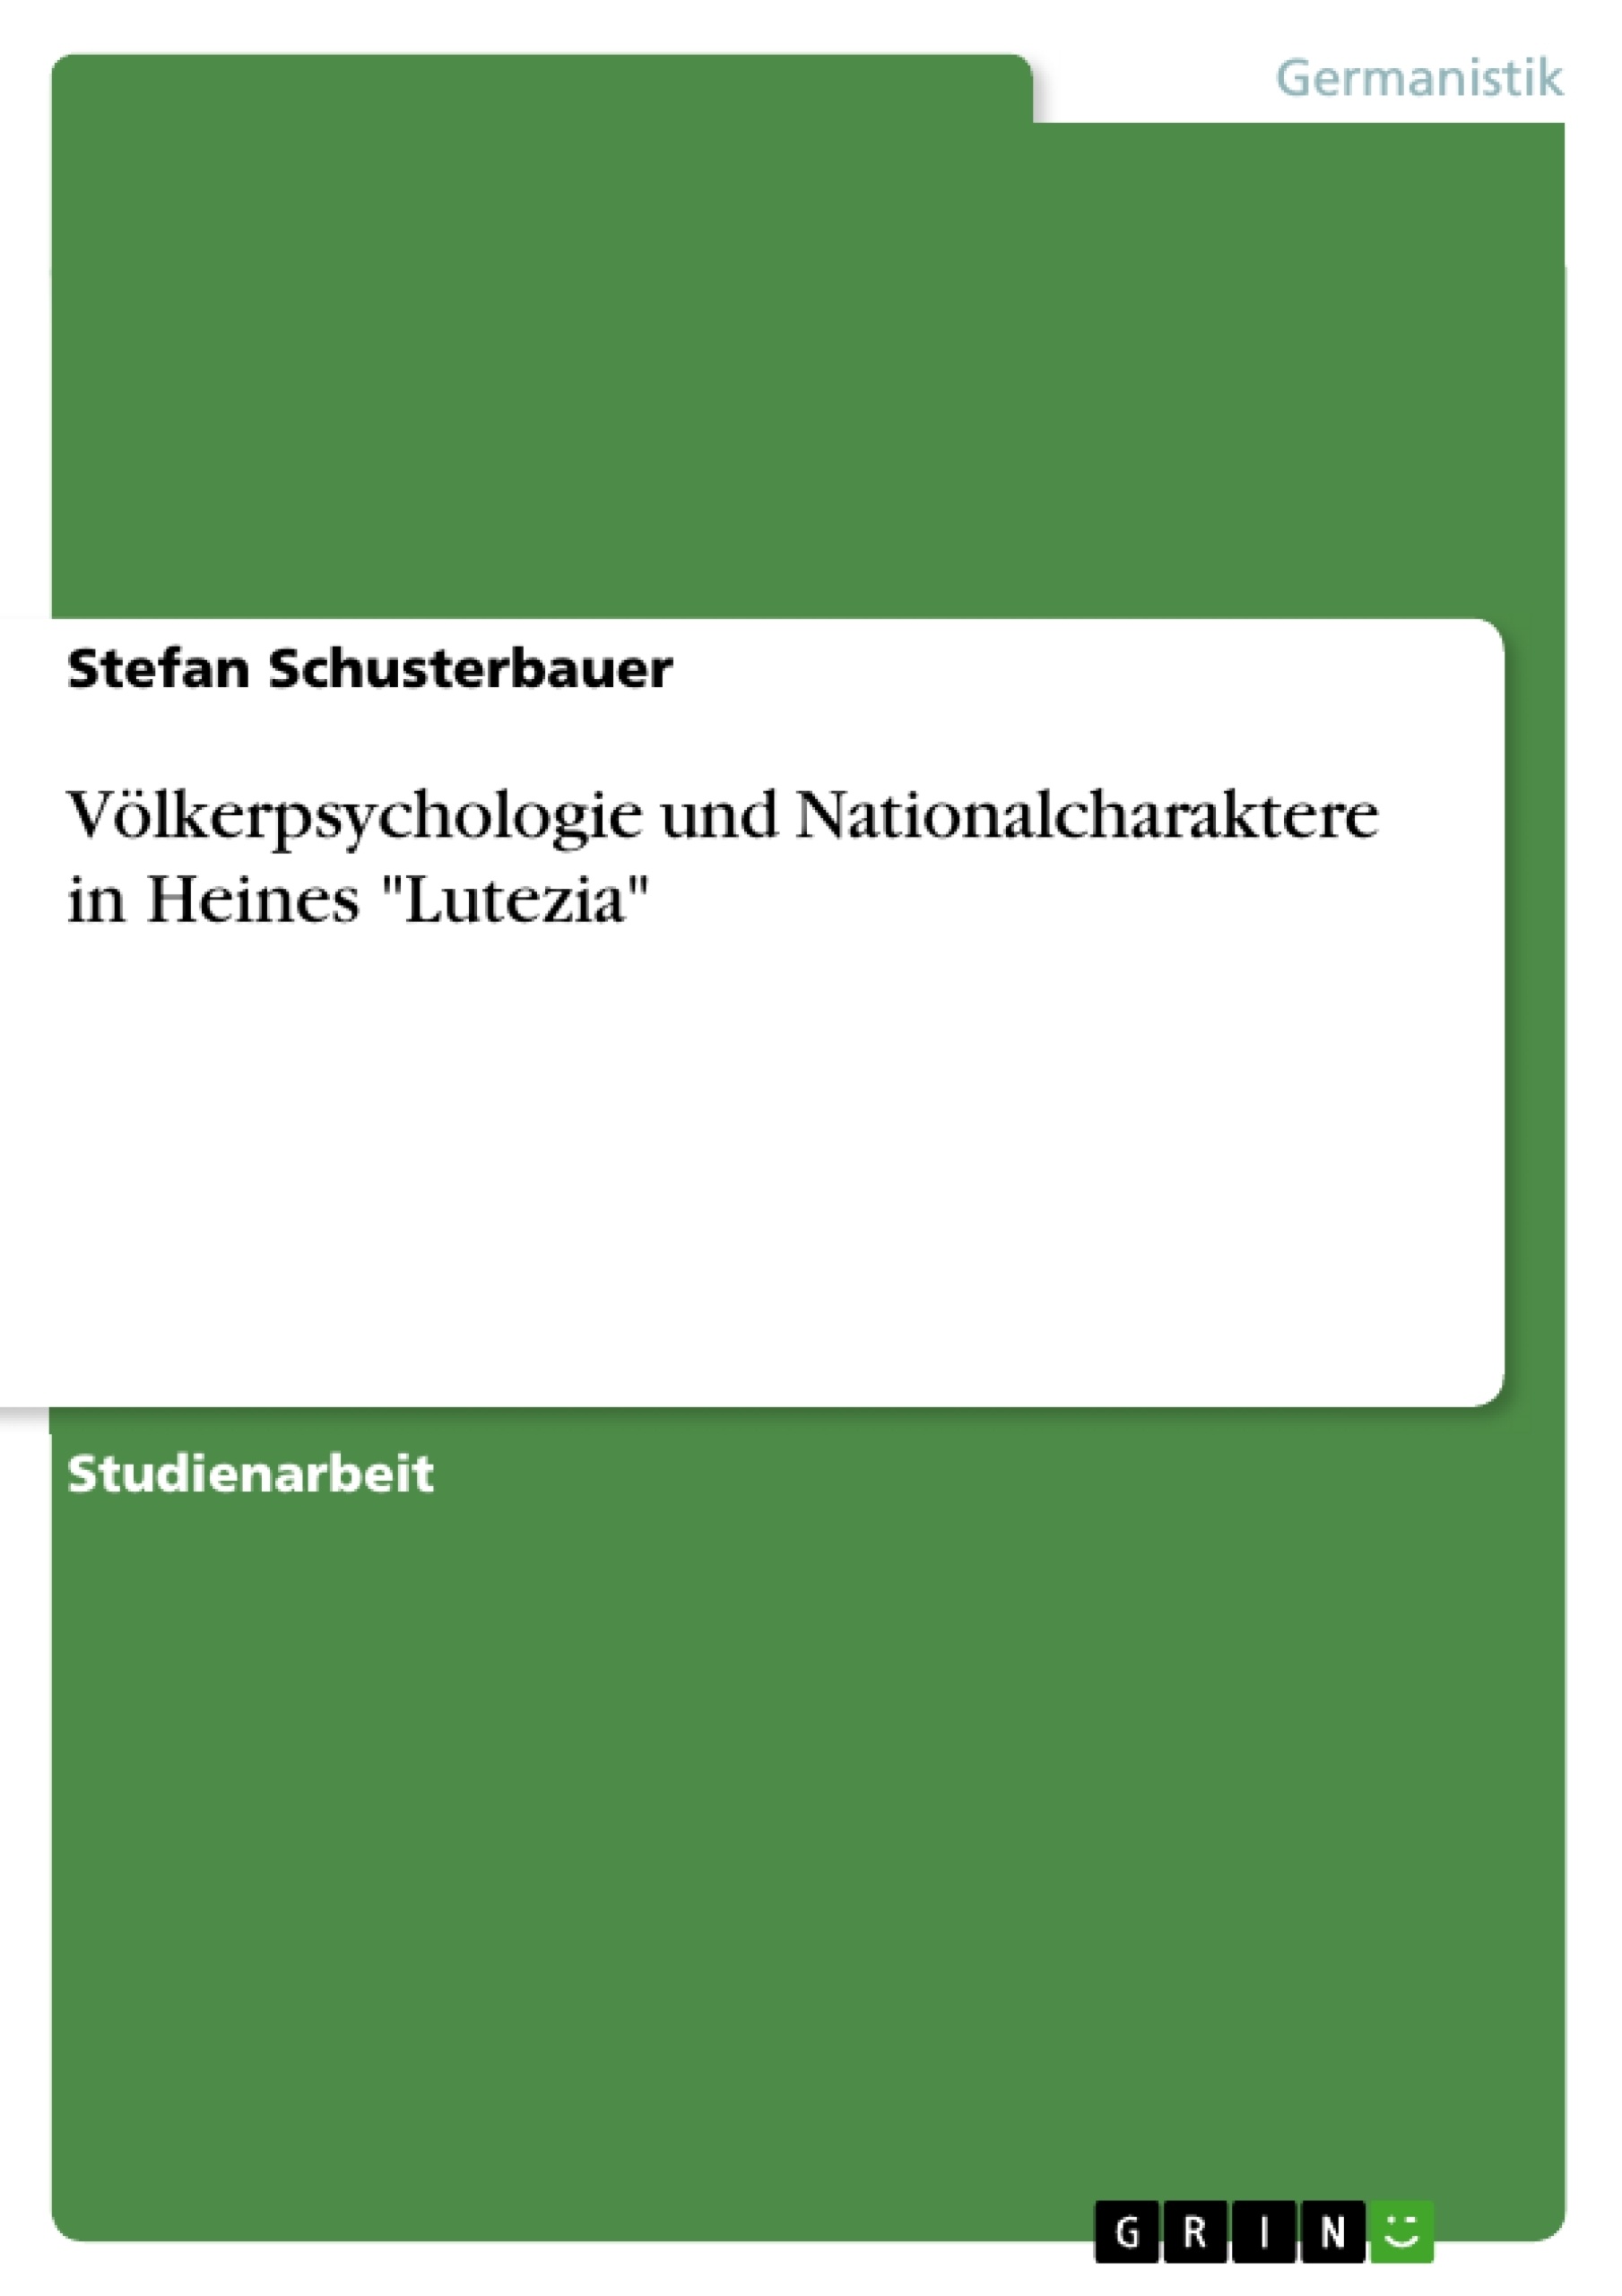 Titel: Völkerpsychologie und Nationalcharaktere in Heines "Lutezia"